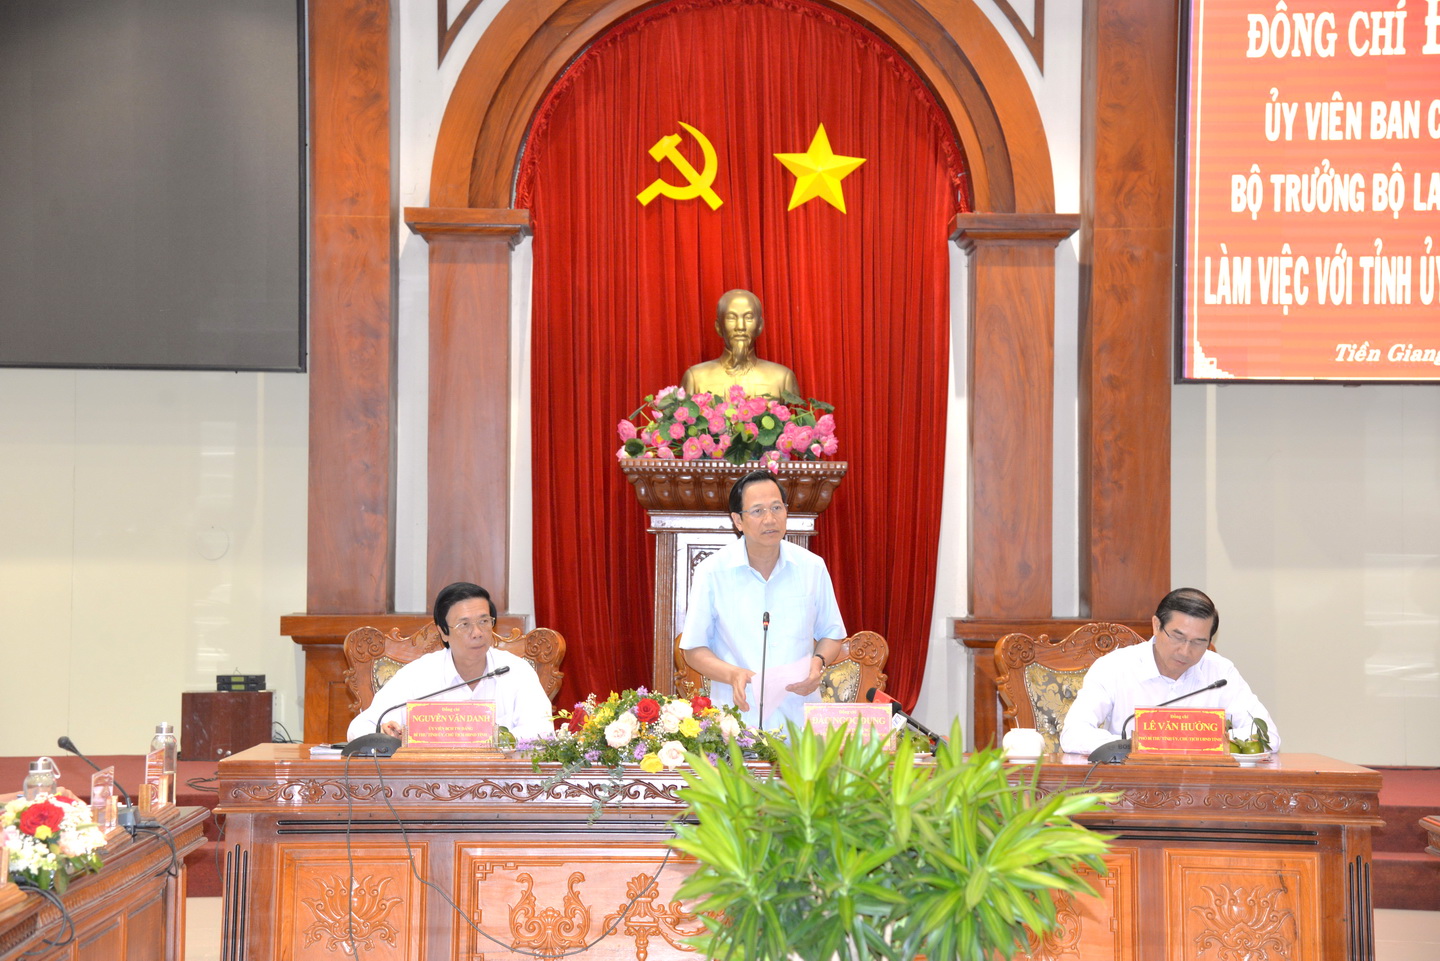 Bộ trưởng Đào Ngọc Dung phát biểu kết luận buổi làm việc